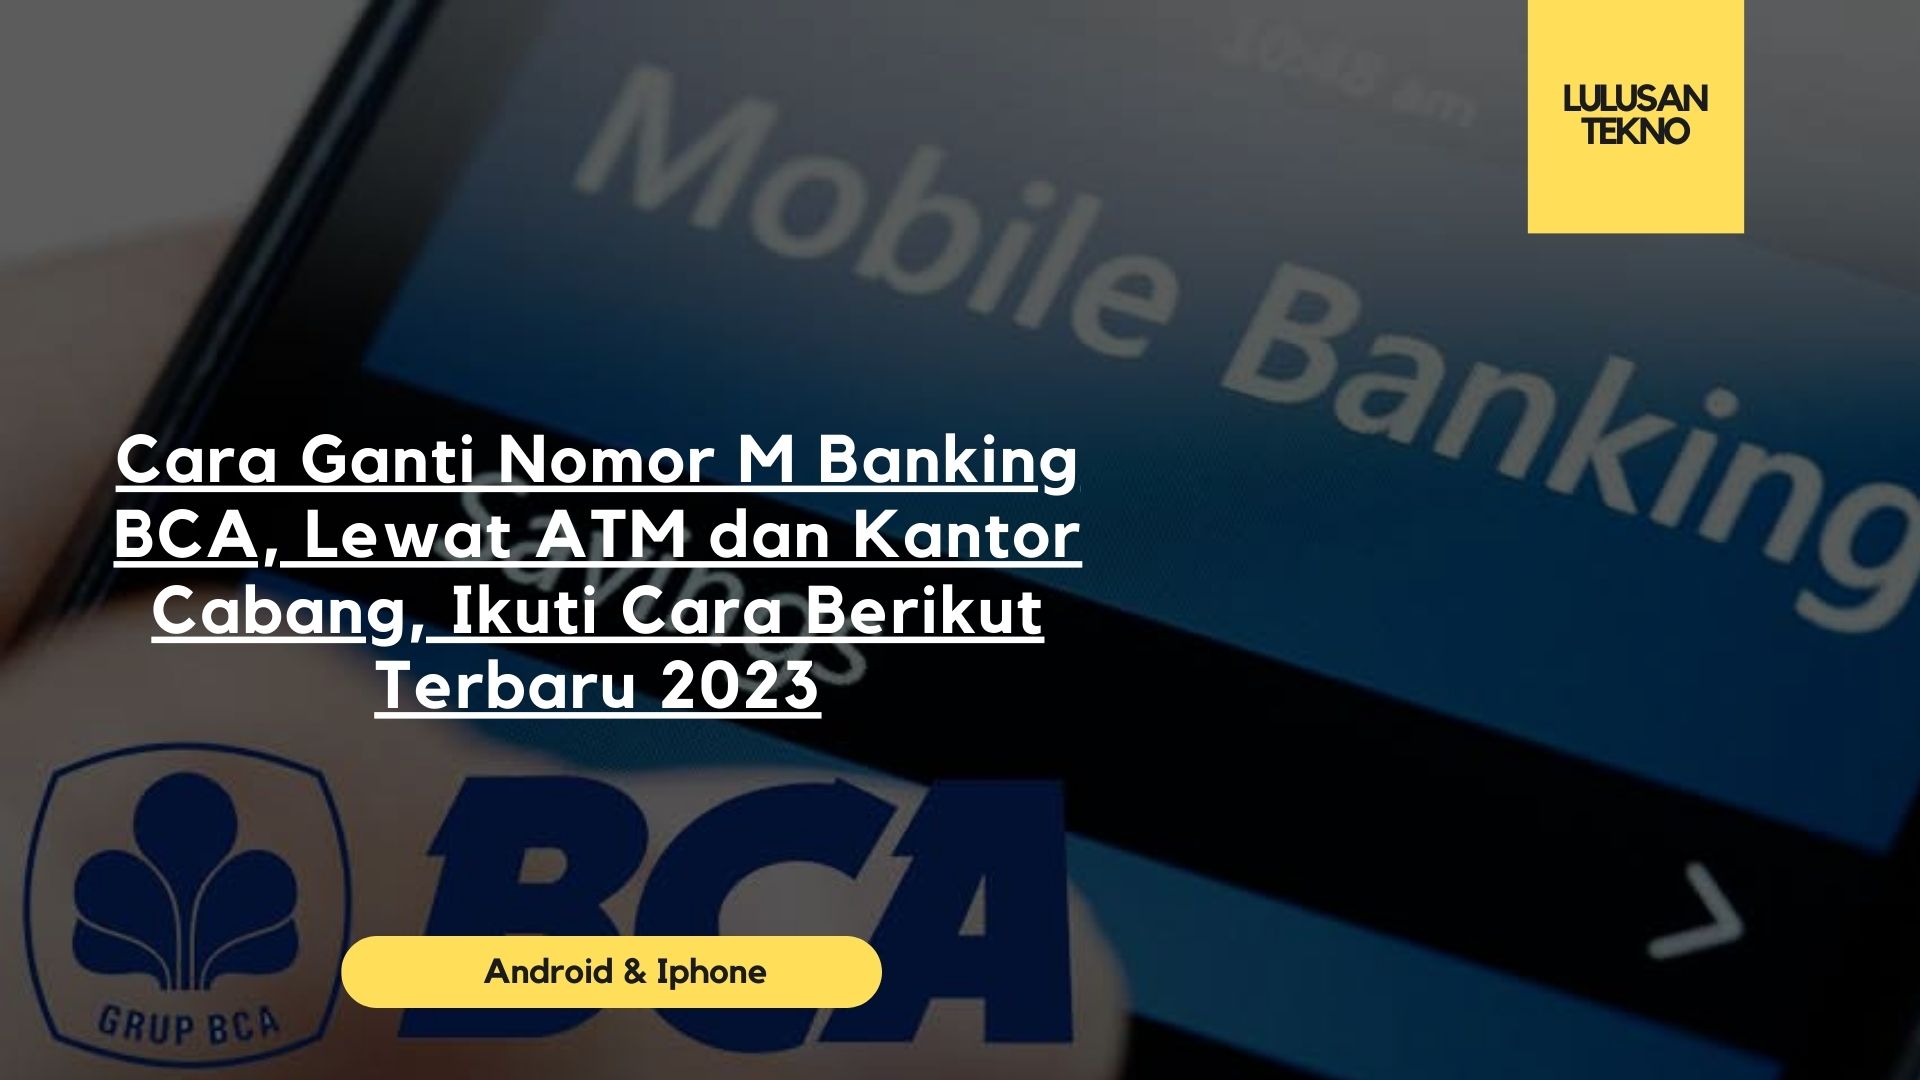 Cara Ganti Nomor M Banking BCA, Lewat ATM dan Kantor Cabang, Ikuti Cara Berikut Terbaru 2023